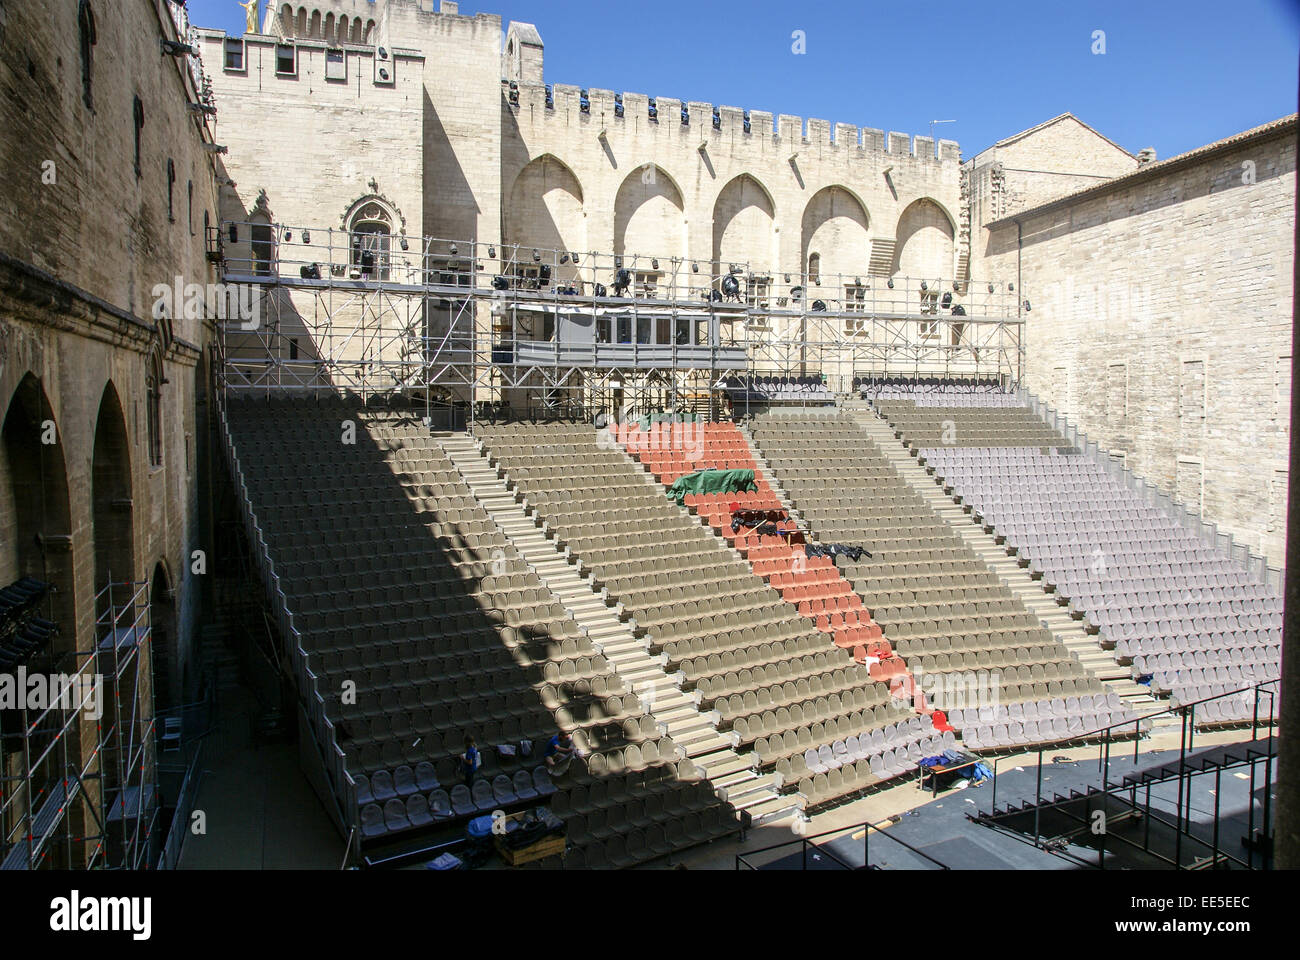 Palais des Papes, Avignon, France Stock Photo